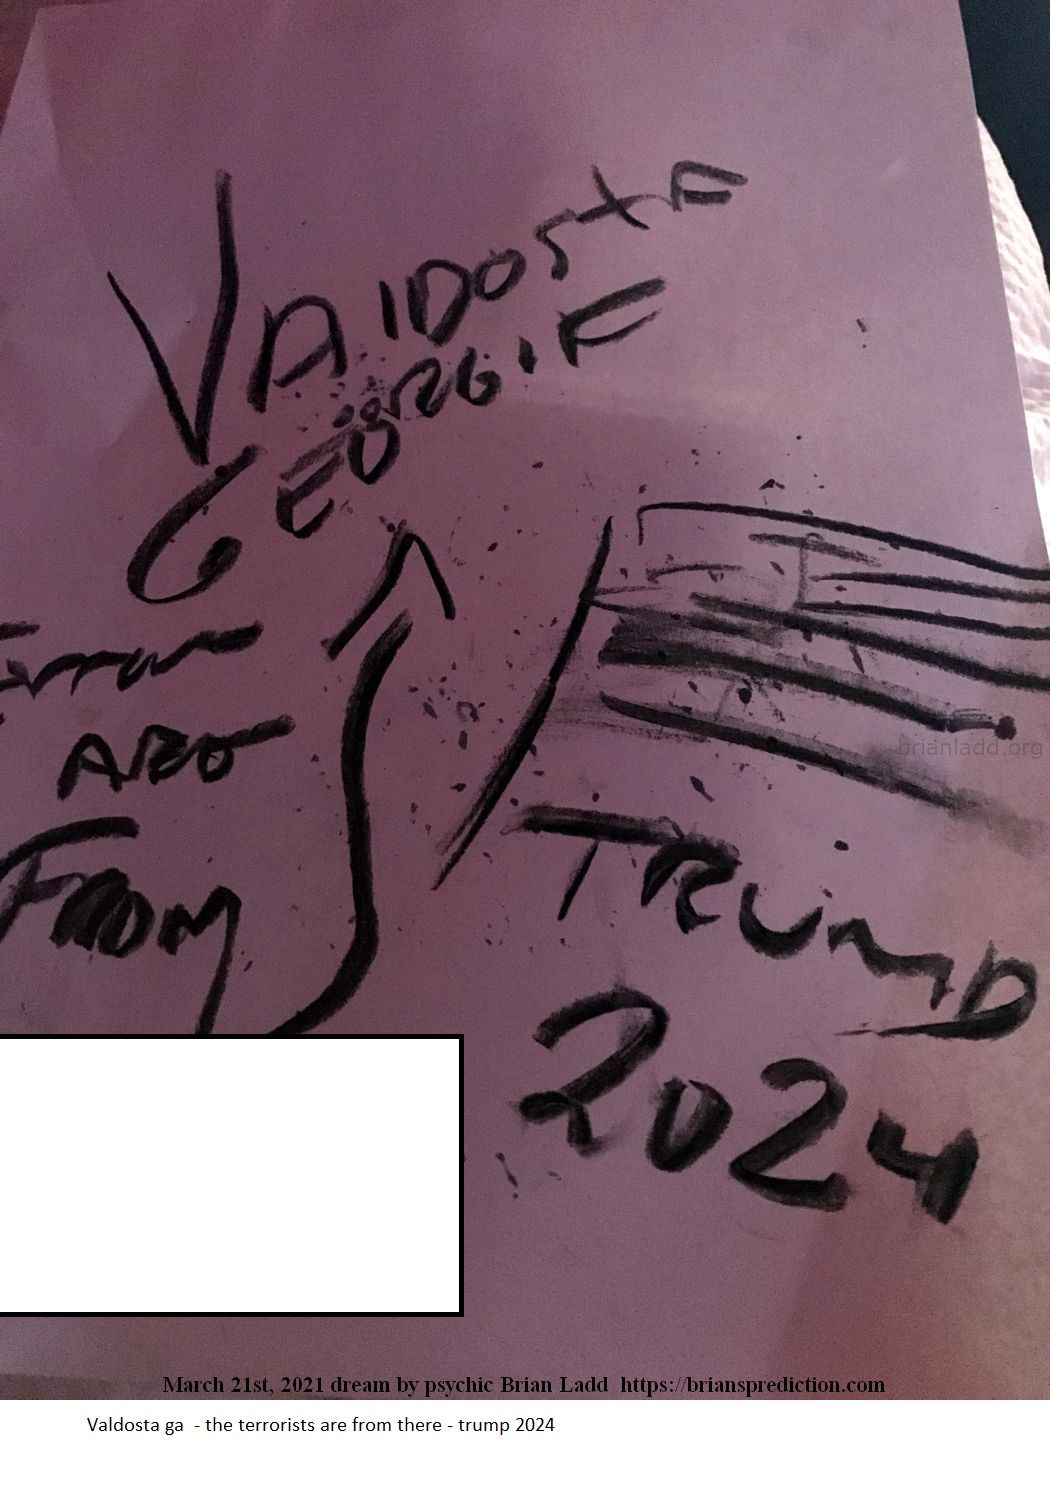 14635 21 March 2021 3 - Valdosta Ga  - The Terrorists Are From There - Trump 2024....
Valdosta Ga  - The Terrorists Are From There - Trump 2024.
